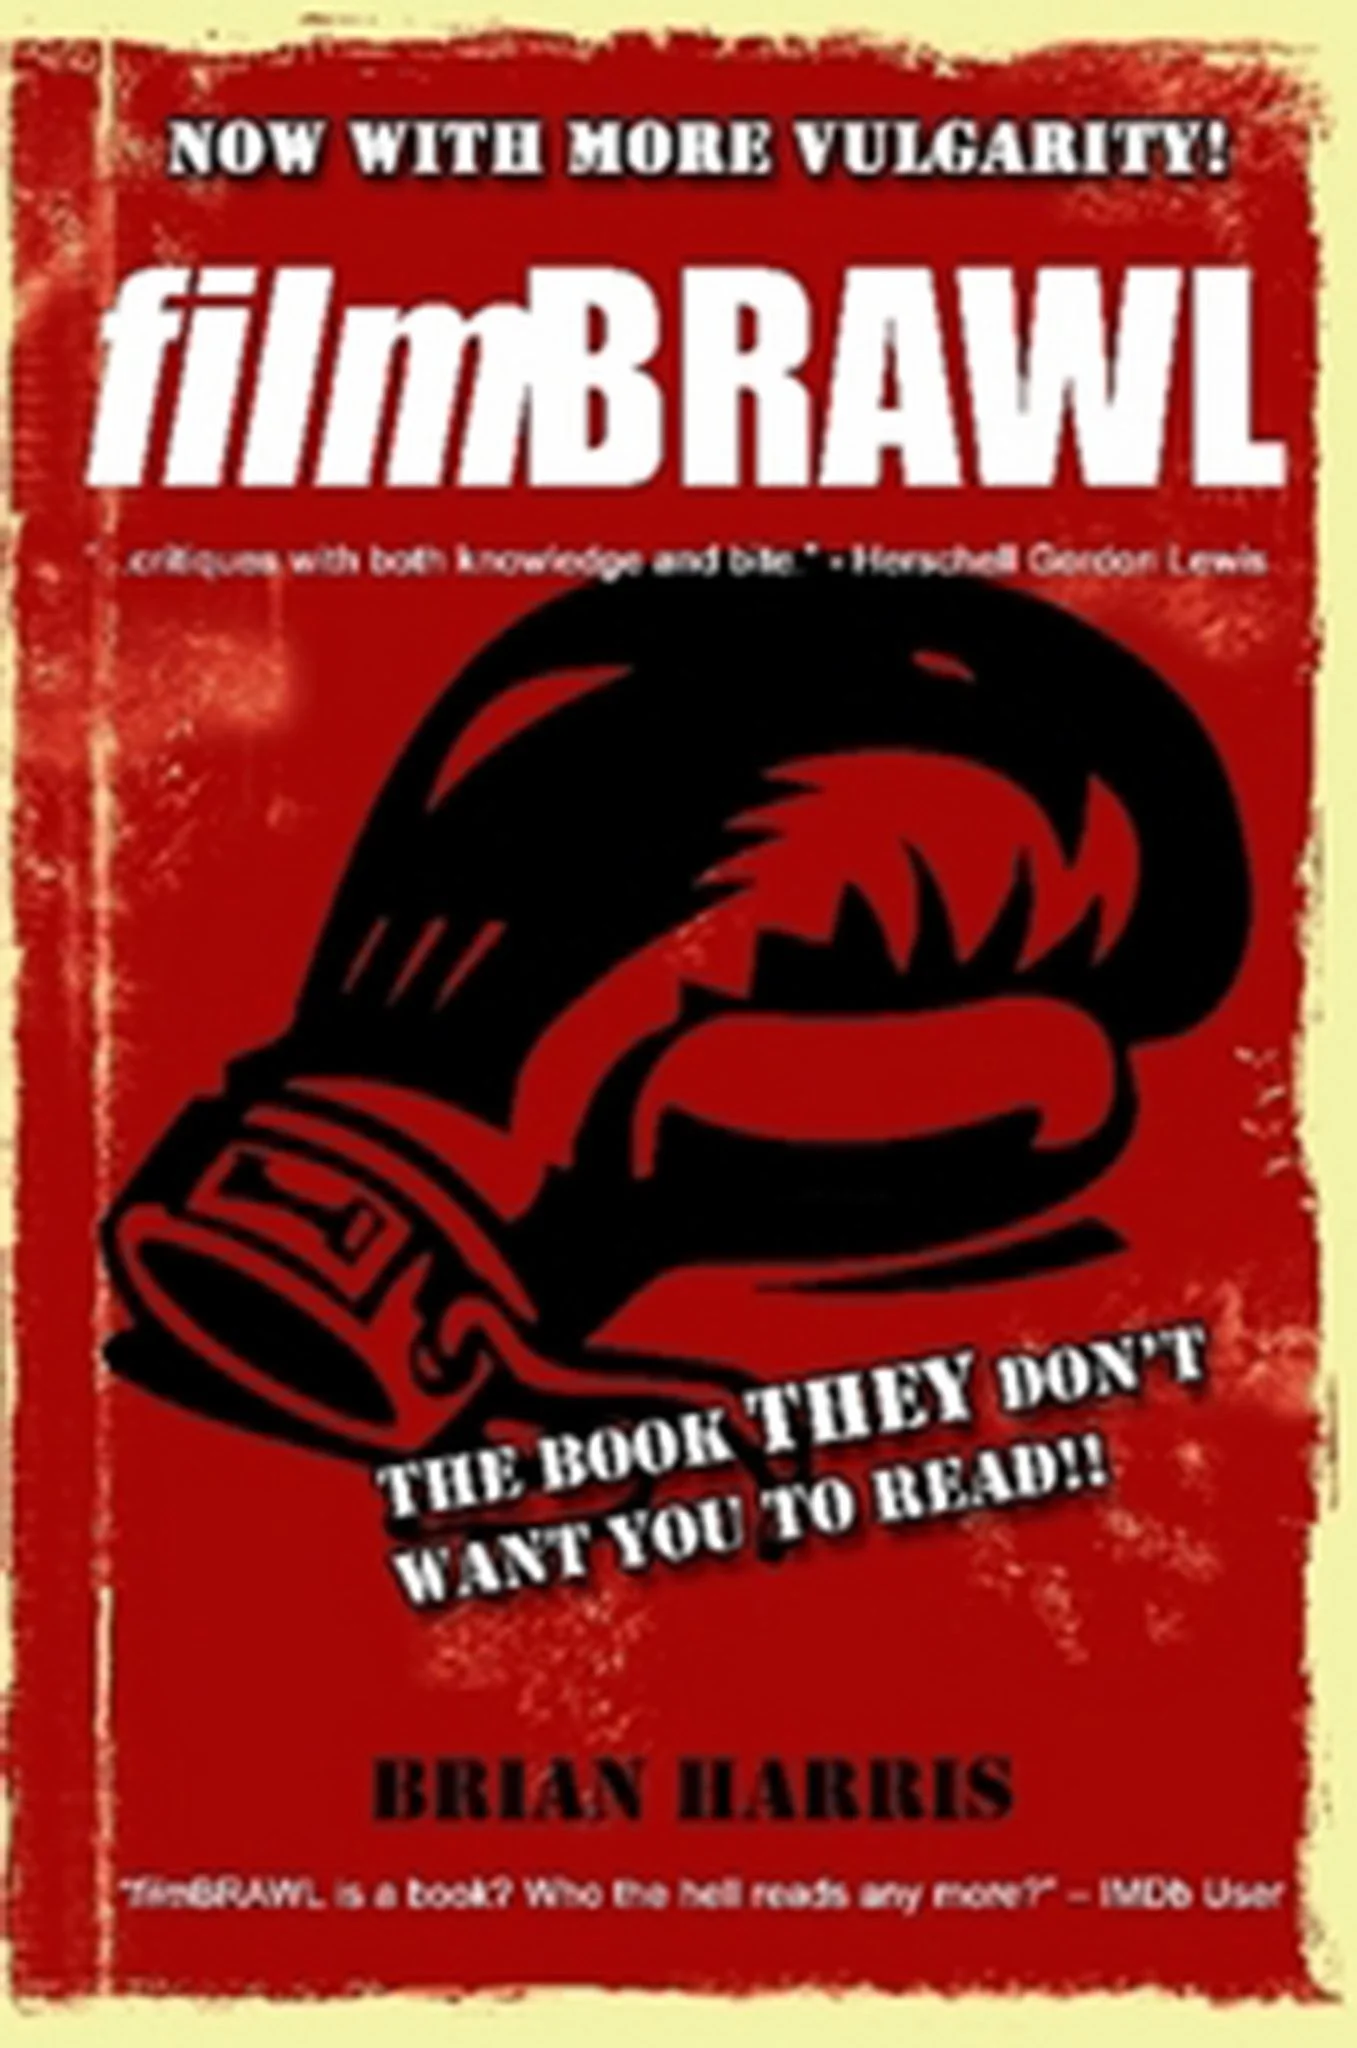 filmbrawl book cover